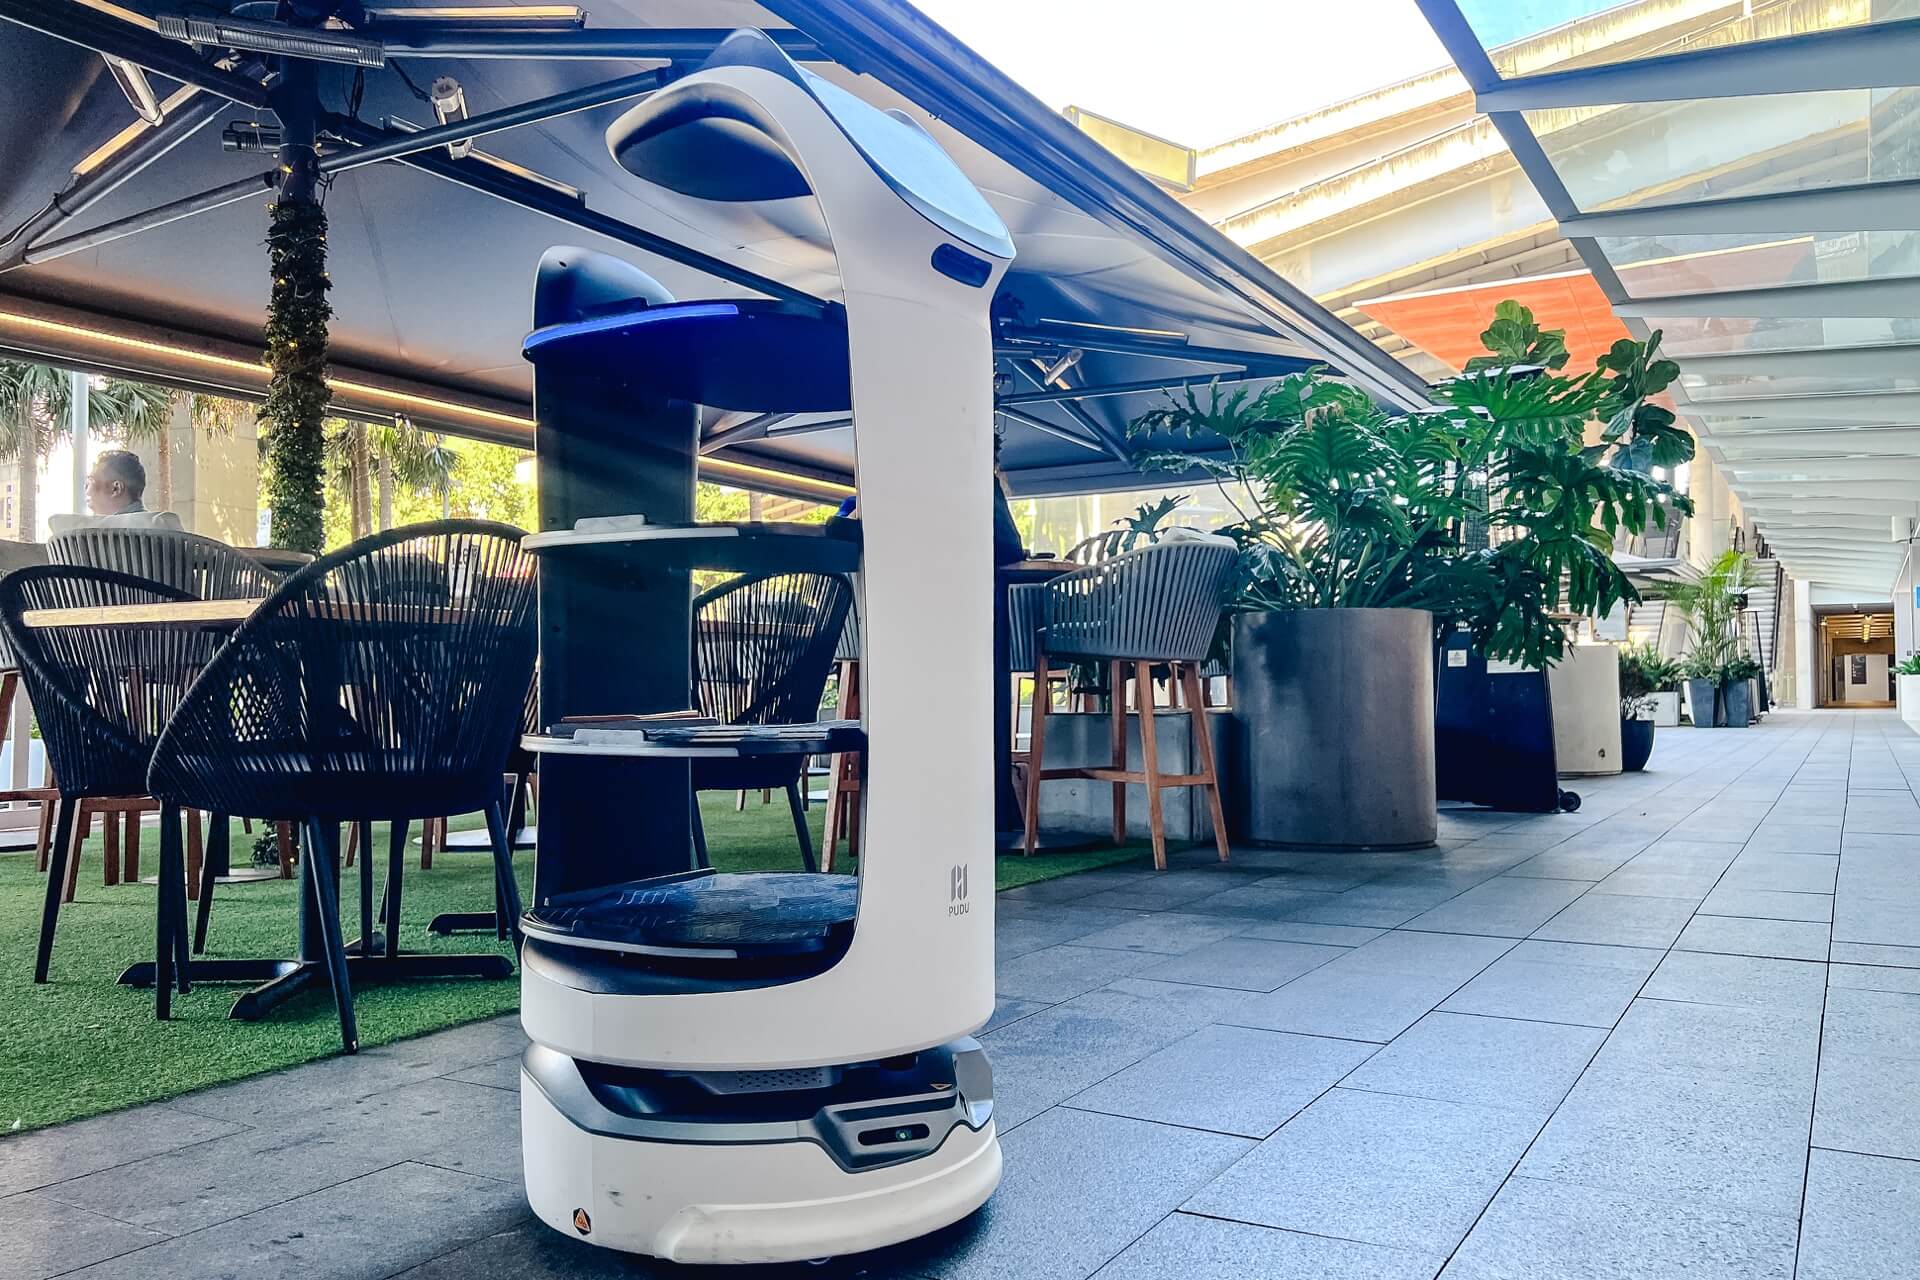 Meet Bellabot Robot Waiter at Planar Restaurant